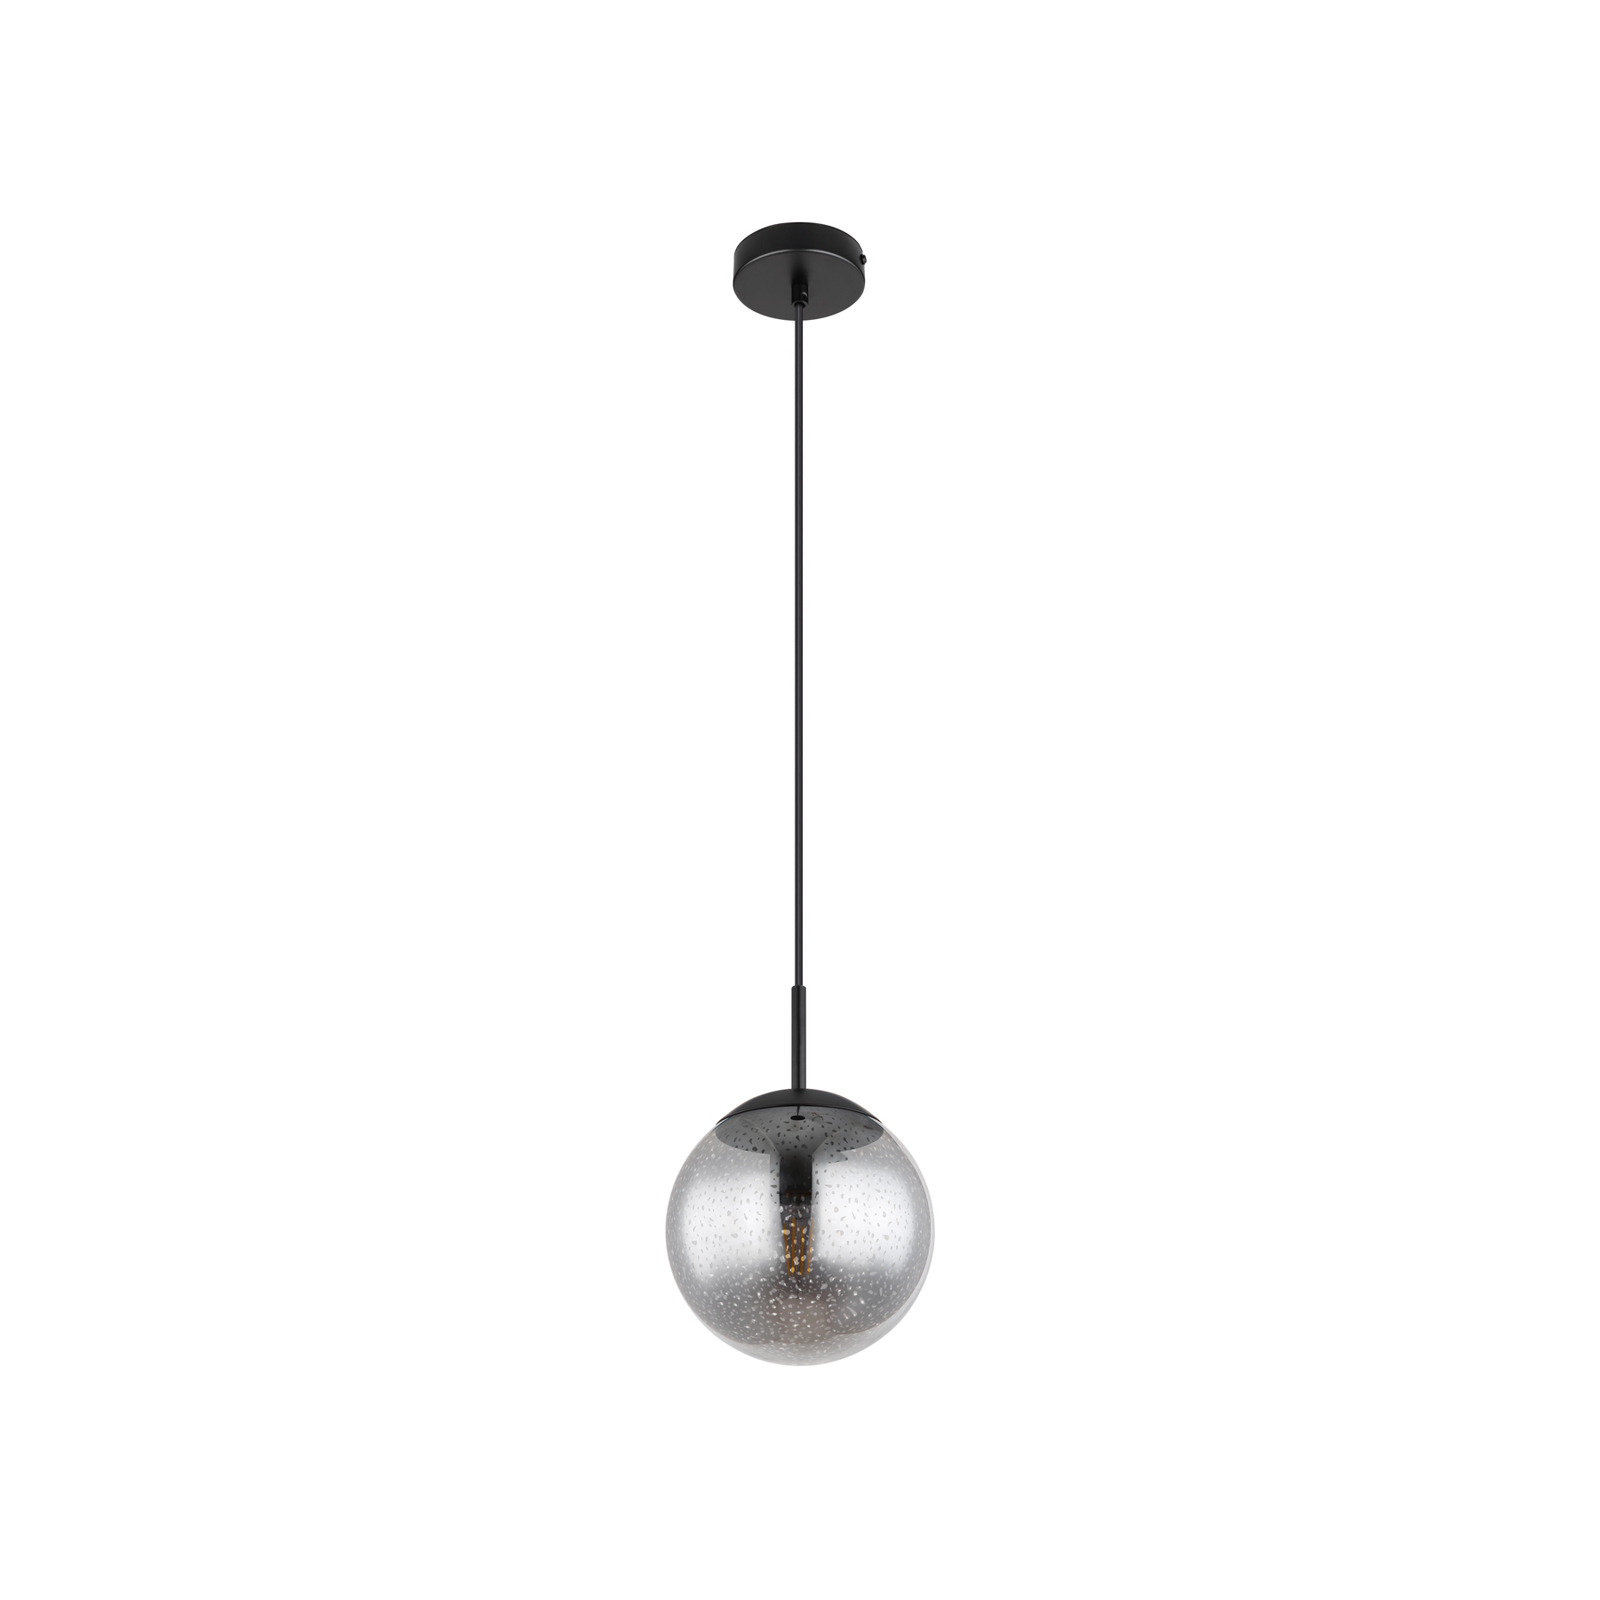 Samos pendellampa, Ø 20 cm, rökgrå/svart, glas